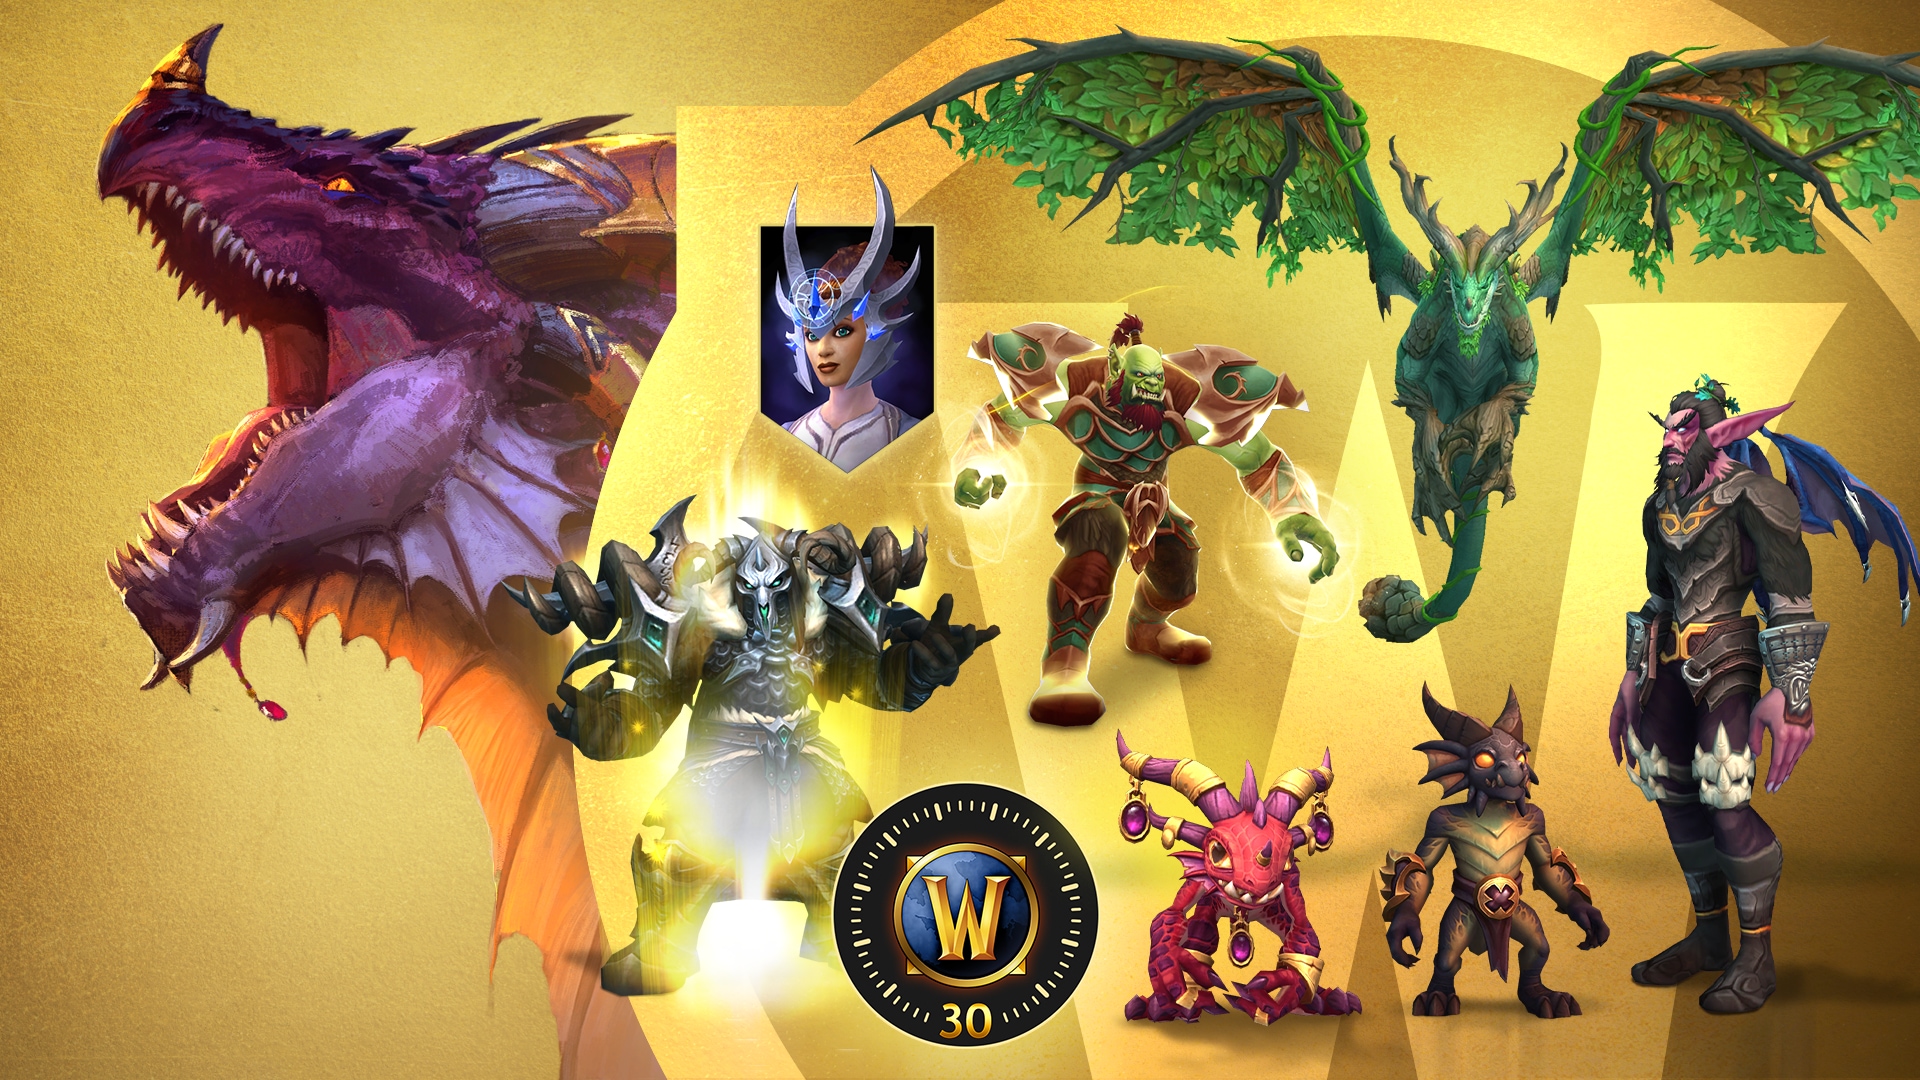 World Of Warcraft: Dragonflight Epic Edition: Incluye todo lo que trae la Heroic Edition más 30 días de tiempo de juego, el efecto de Piedra de hogar de caminante del tiempo, la transfiguración de la ranura de cabeza Diadema de la guardiana de hechizos, y la transfiguración de la ranura de espalda Alas del despertar en 5 colores distintos, uno por cada uno de los vuelos principales.